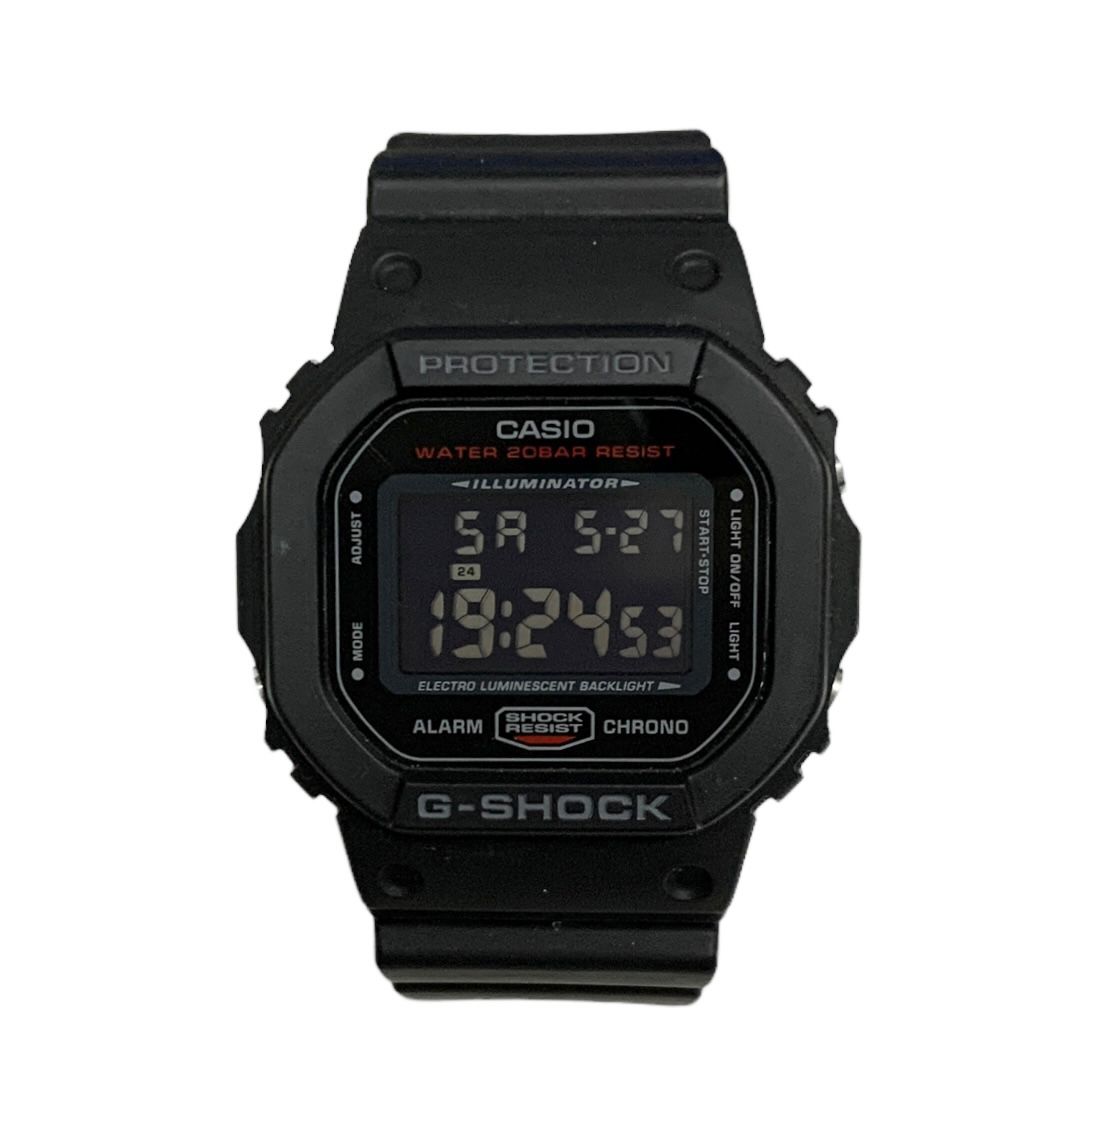 CASIO (カシオ) G-SHOCK Gショック デジタル腕時計 DW-5600HR ブラック レッド メンズ/025